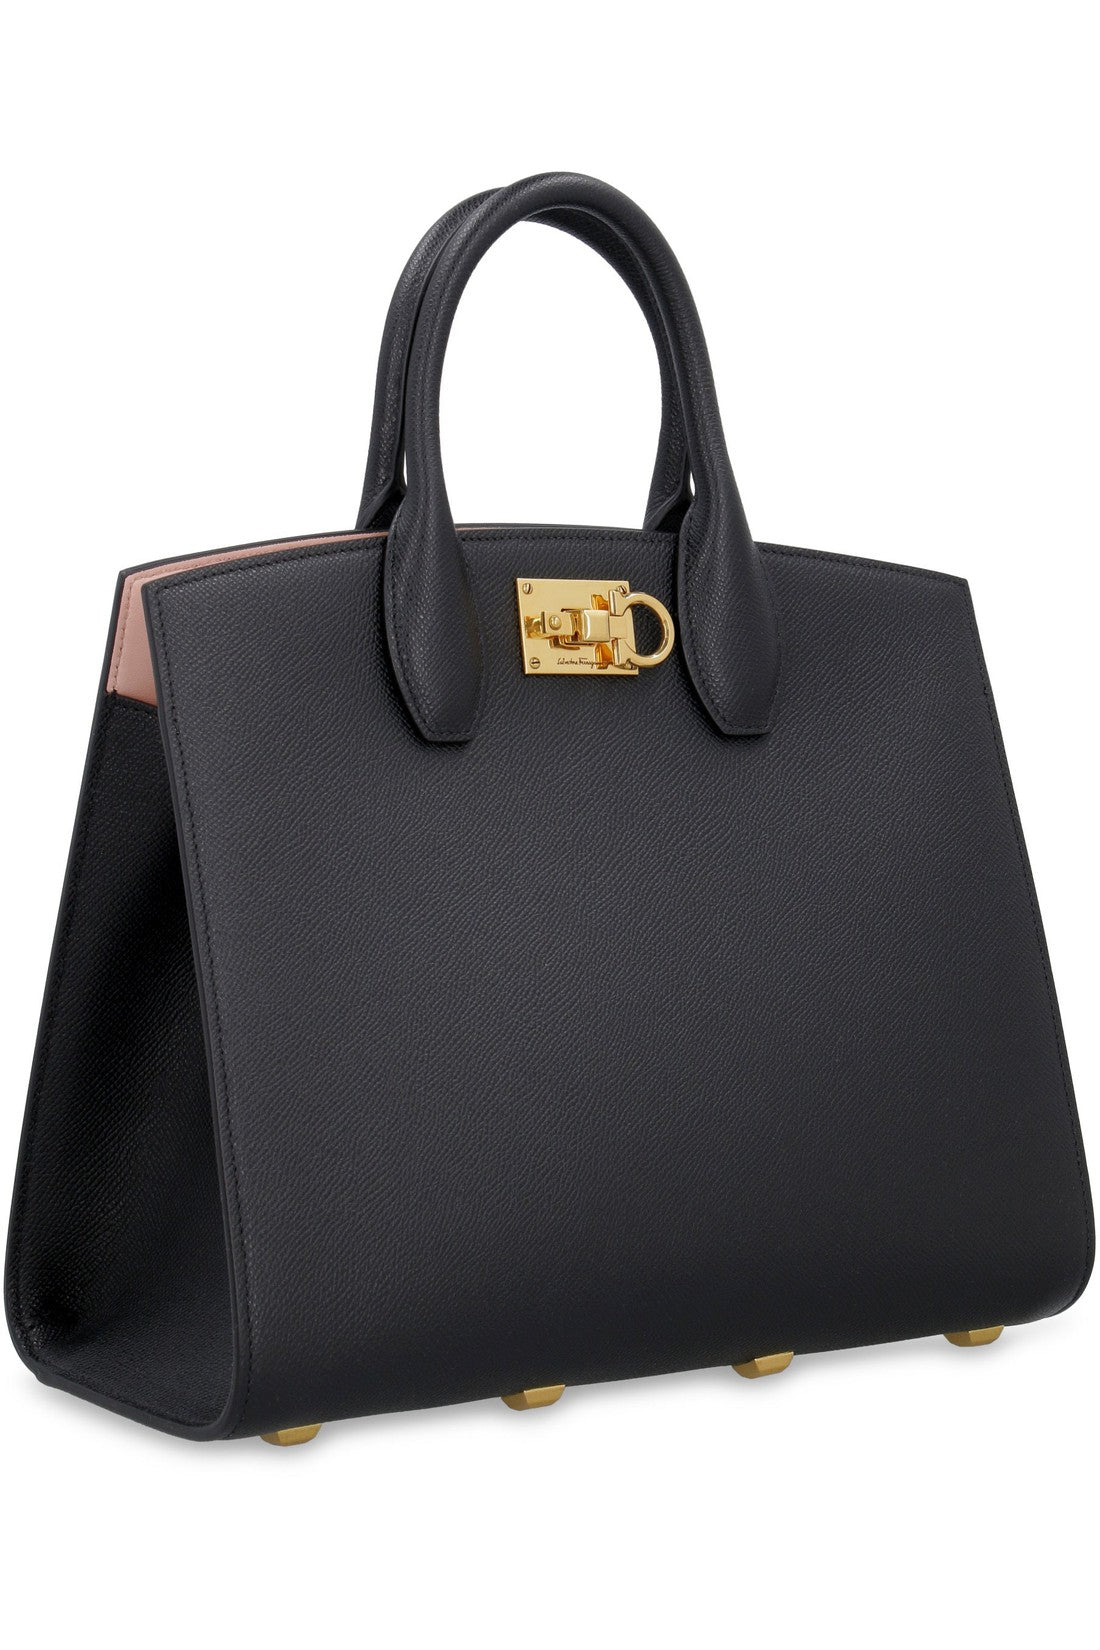 FERRAGAMO-OUTLET-SALE-The Studio leather handbag-ARCHIVIST